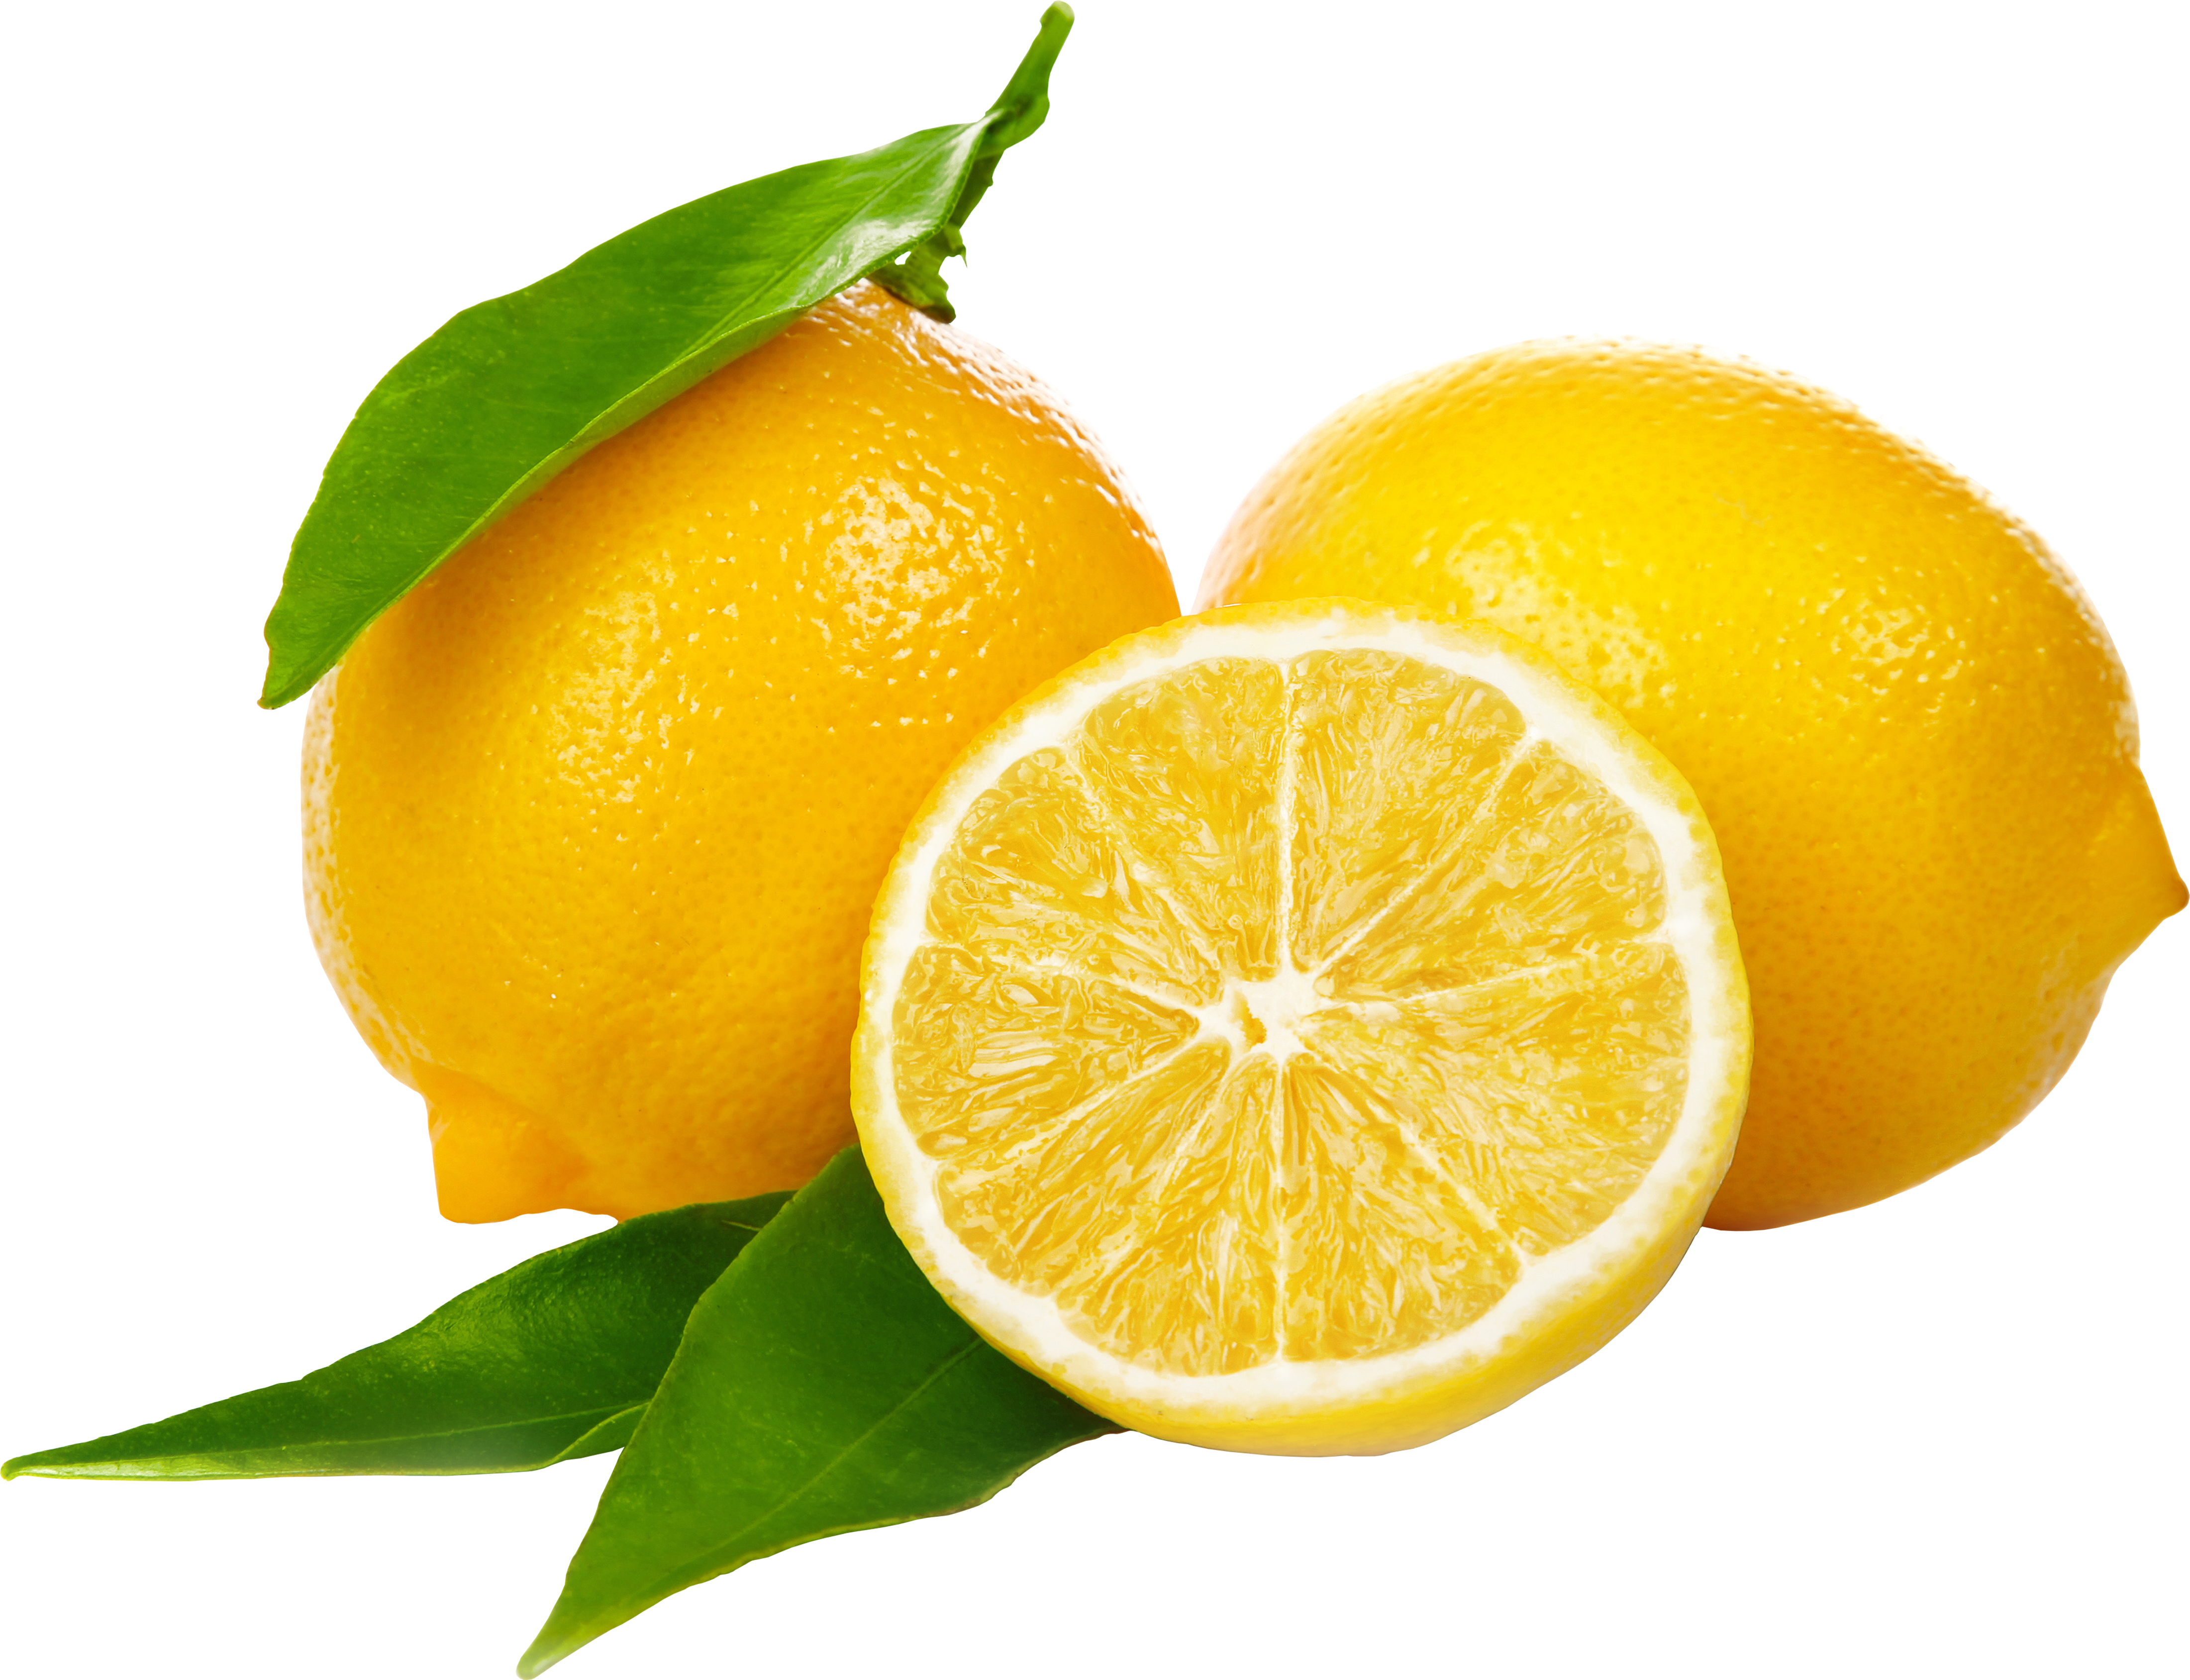 lemons clipart yellow vegetable